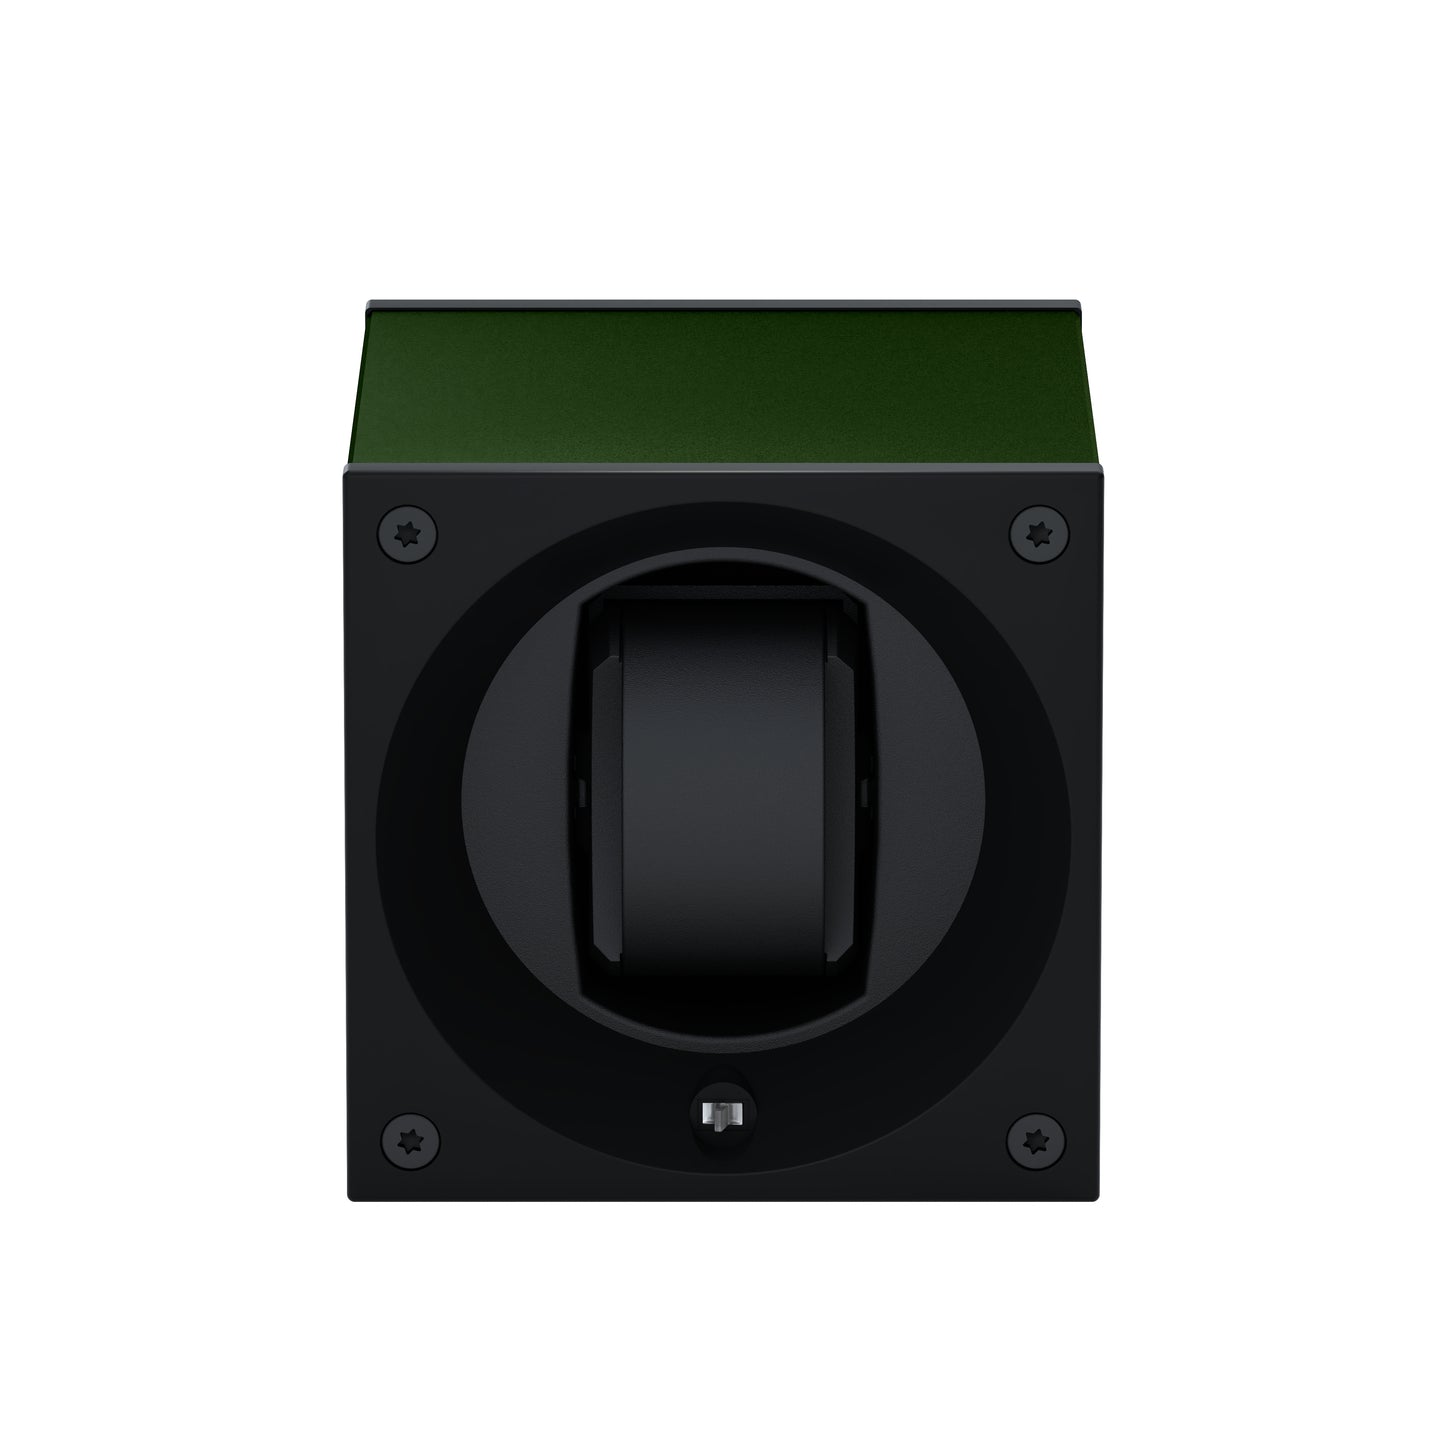 Masterbox 1 montre Aluminium Vert Foncé : écrin rotatif pour montre automatique